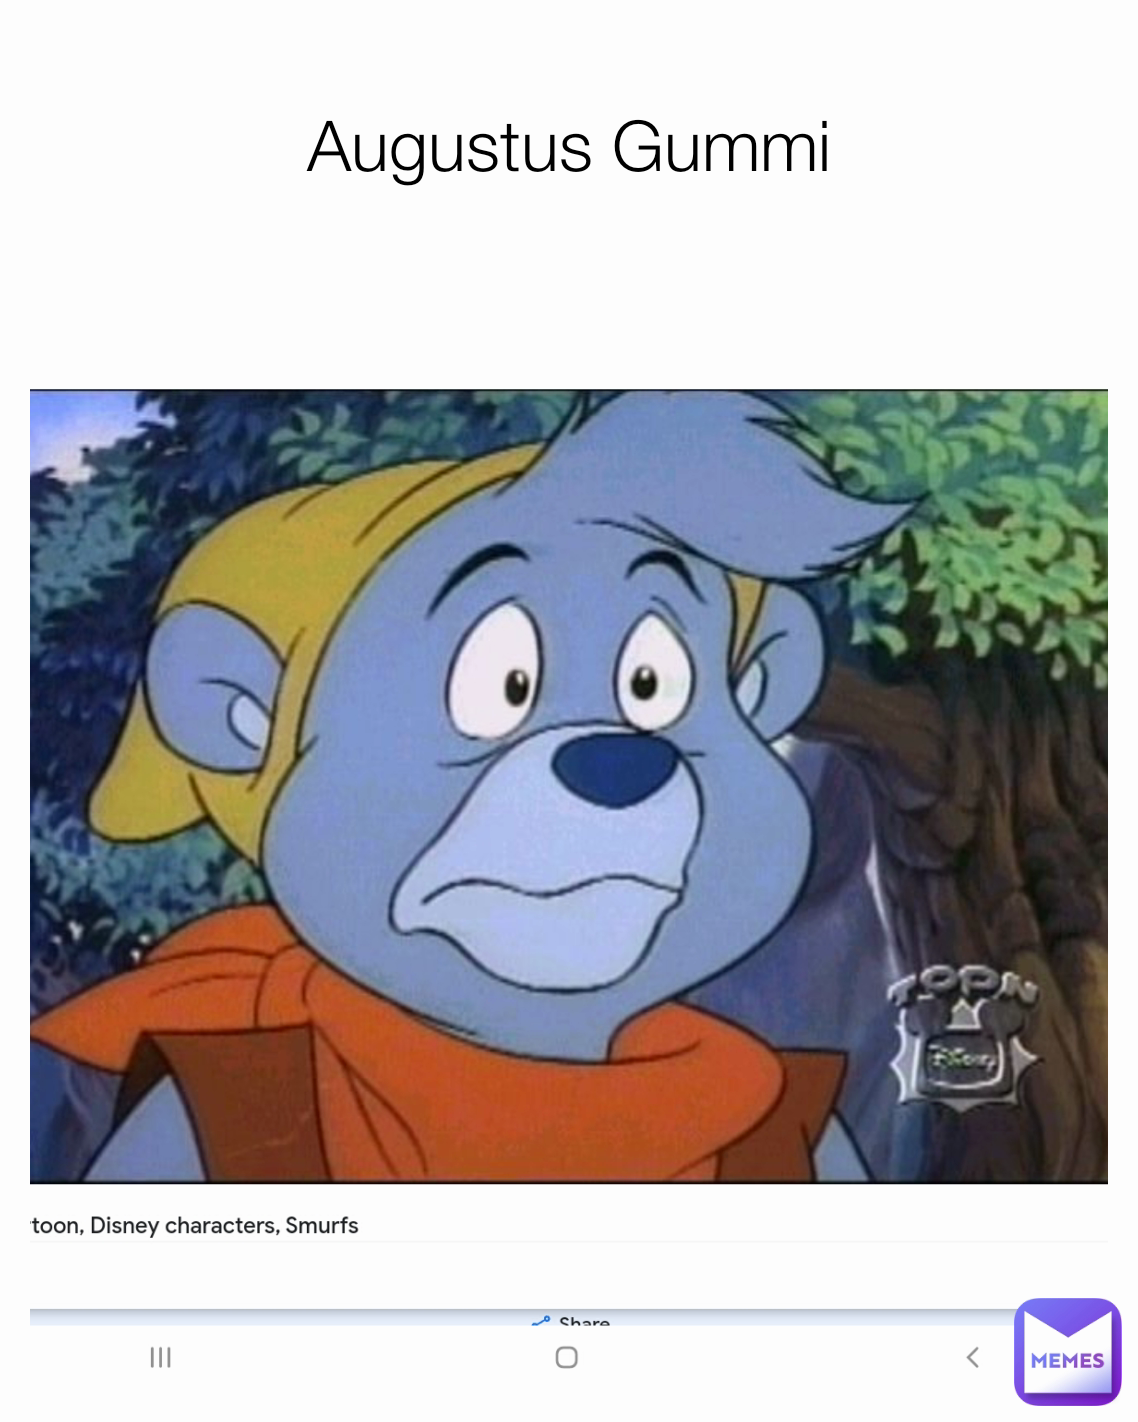 Augustus Gummi